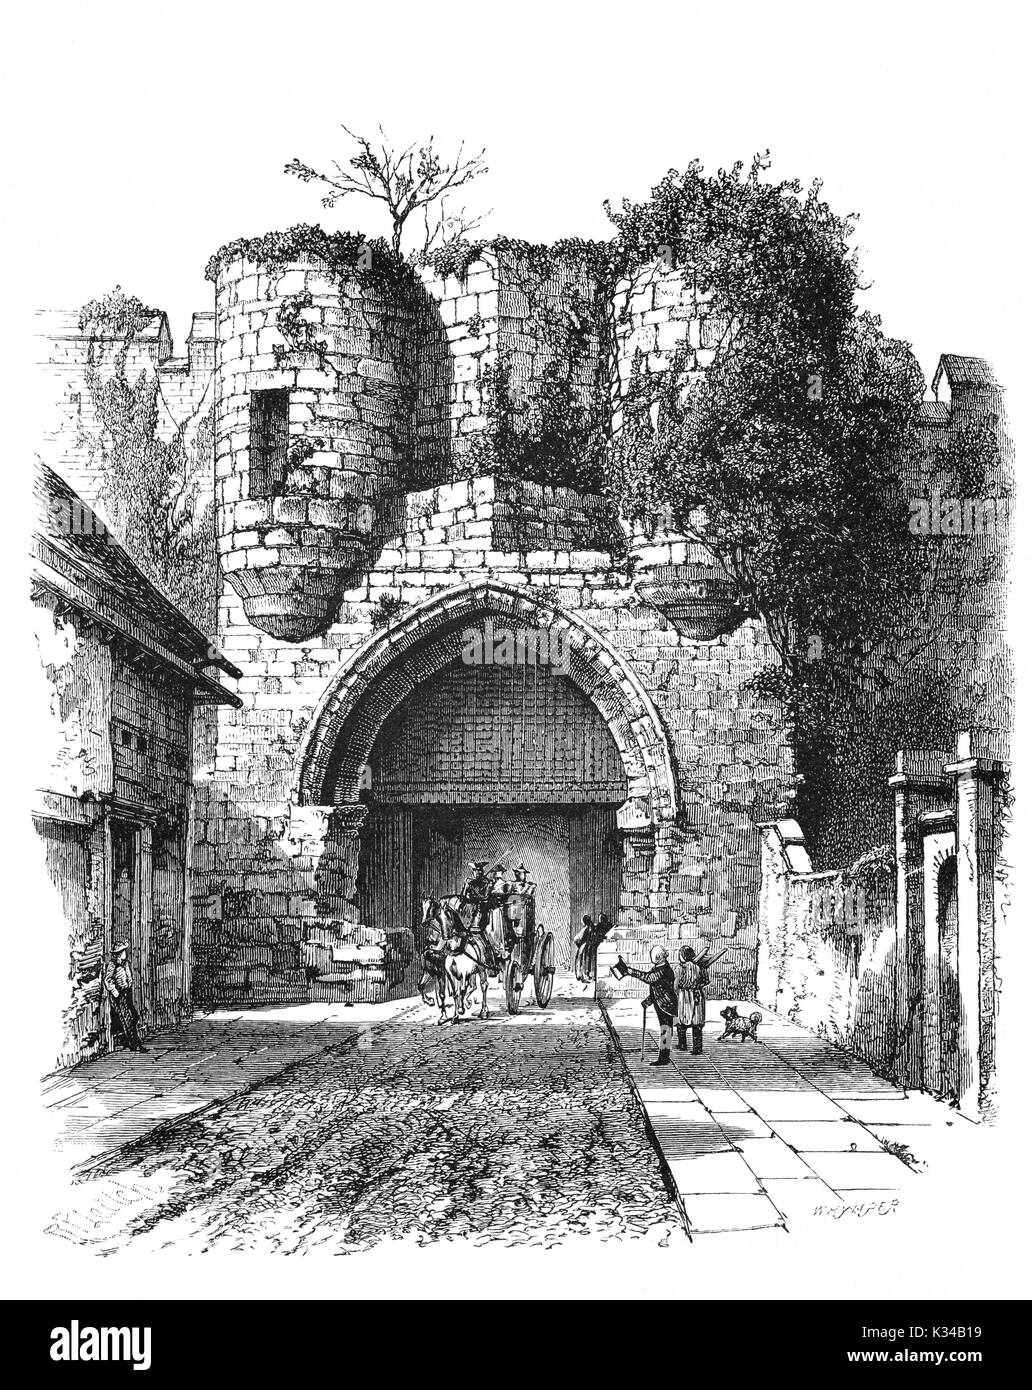 1870: Cavallo e Carrozza lasciando attraverso la porta est del Lincoln Castle, uno dei più imponenti castelli normanni nel Regno Unito. Esso è stato costruito durante la fine del XI secolo da Guglielmo il Conquistatore sul sito di una preesistente fortezza romana. Lincolnshire, Inghilterra Foto Stock